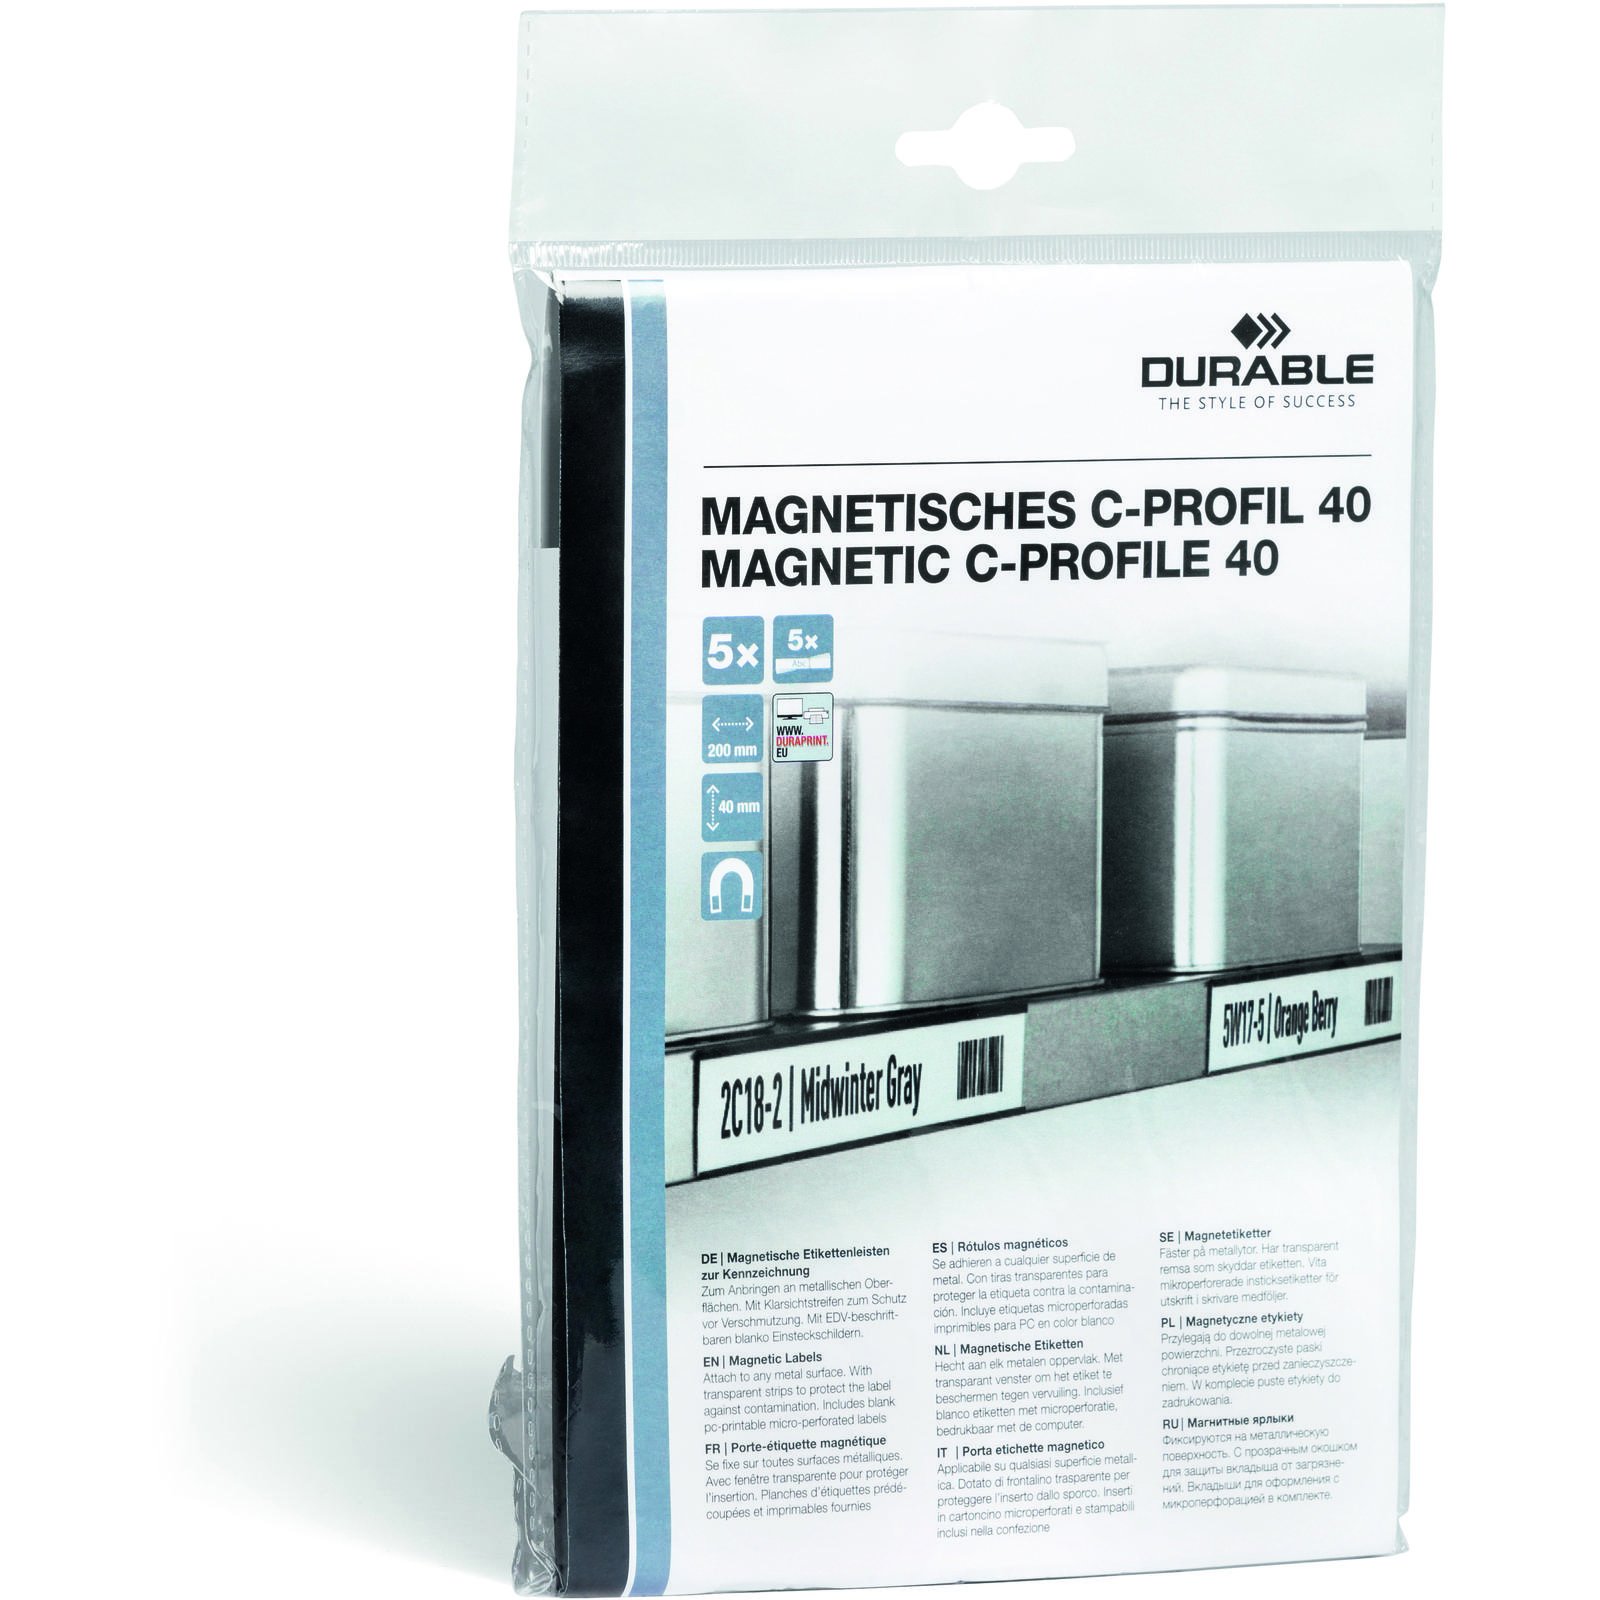 Durable Magnetic C-profile etiketholder